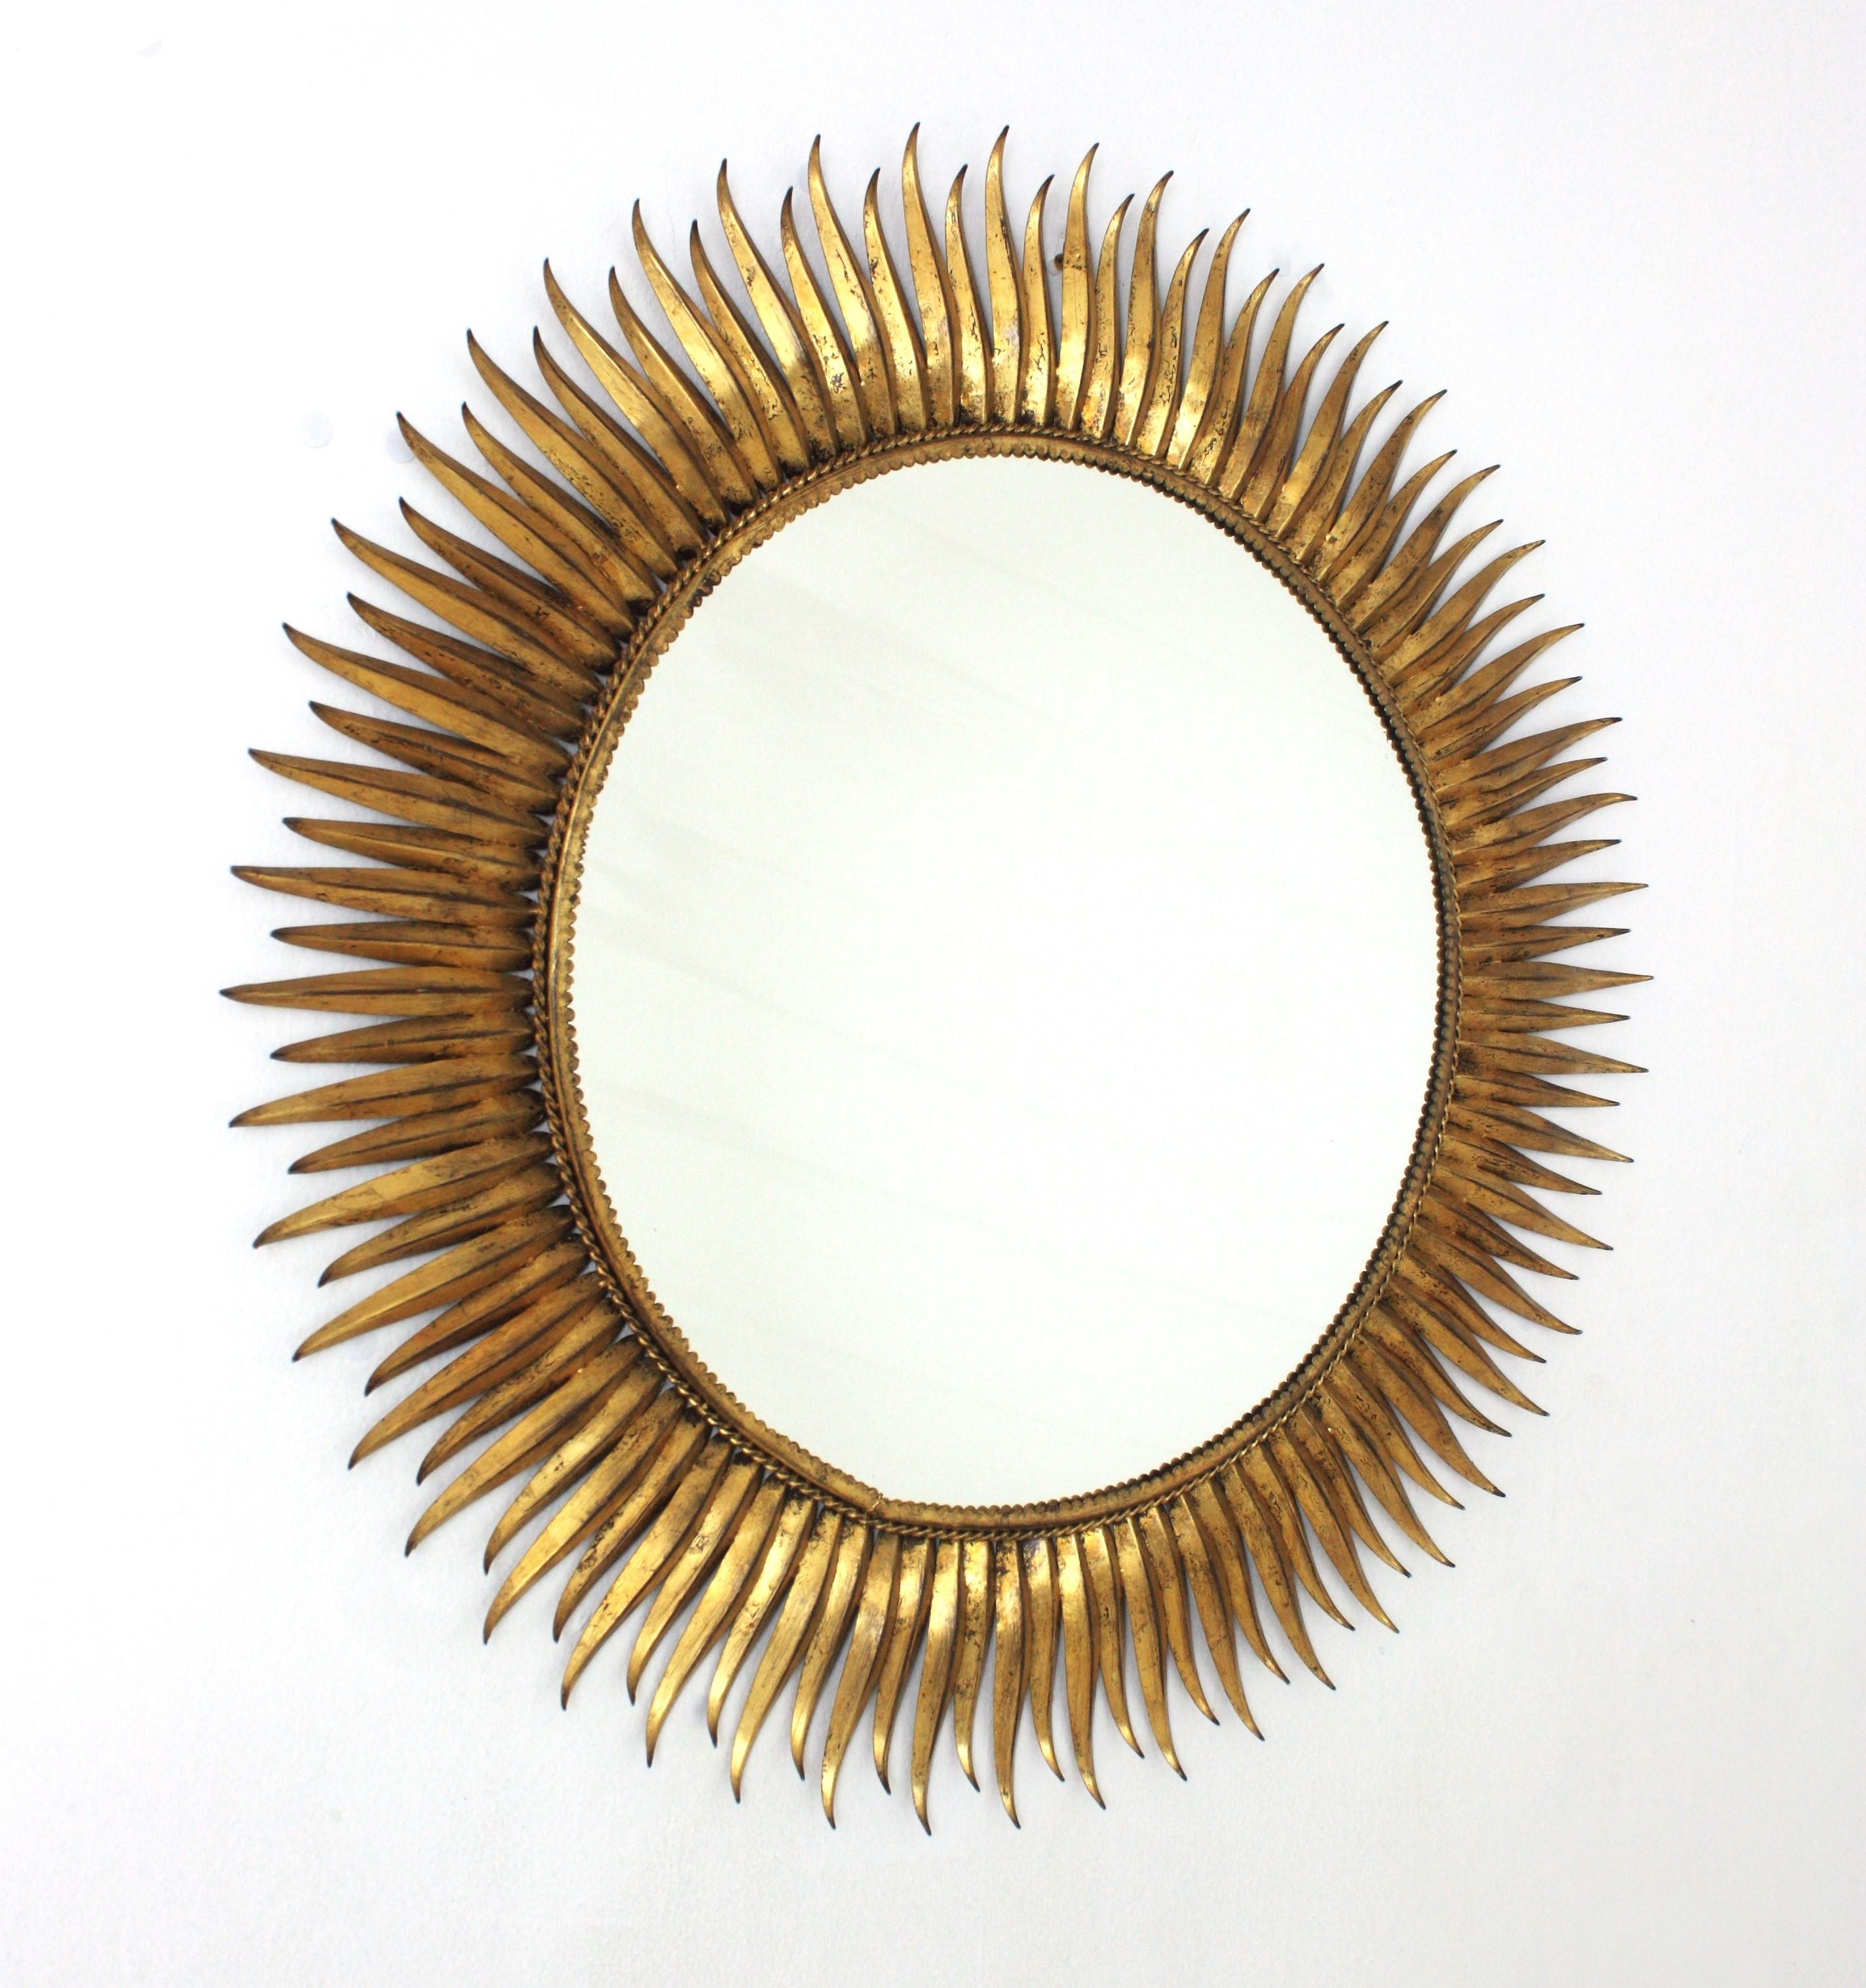 Hervorragende Large Scale vergoldet Eisen Wimper Sonnenschliff Spiegel. Spanien, 1950er Jahre
Der Rahmen ist vollständig von Hand gefertigt, mit abwechselnd handgehämmerten gebogenen und geraden Strahlen in Wimpernform. Mit Blattgold veredelt.